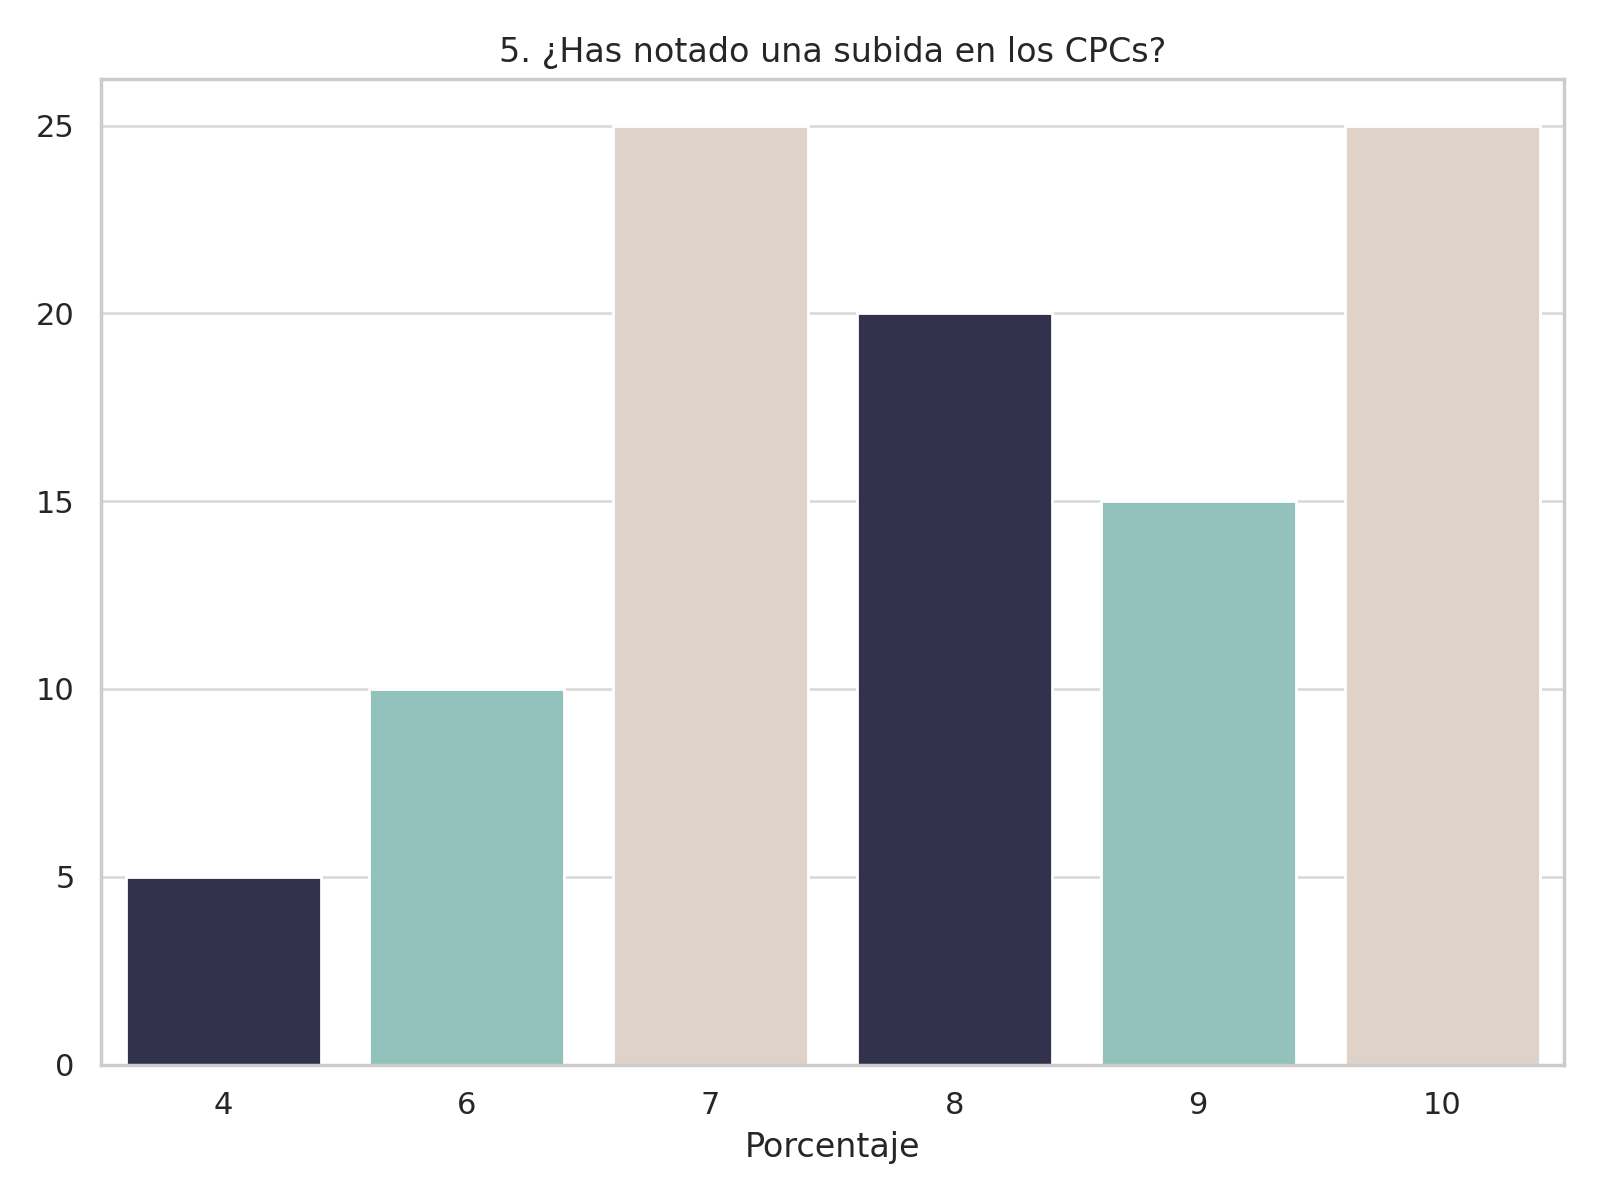 Análisis de la subida en los CPCs (Coste Por Clic) en el estado sector educativo